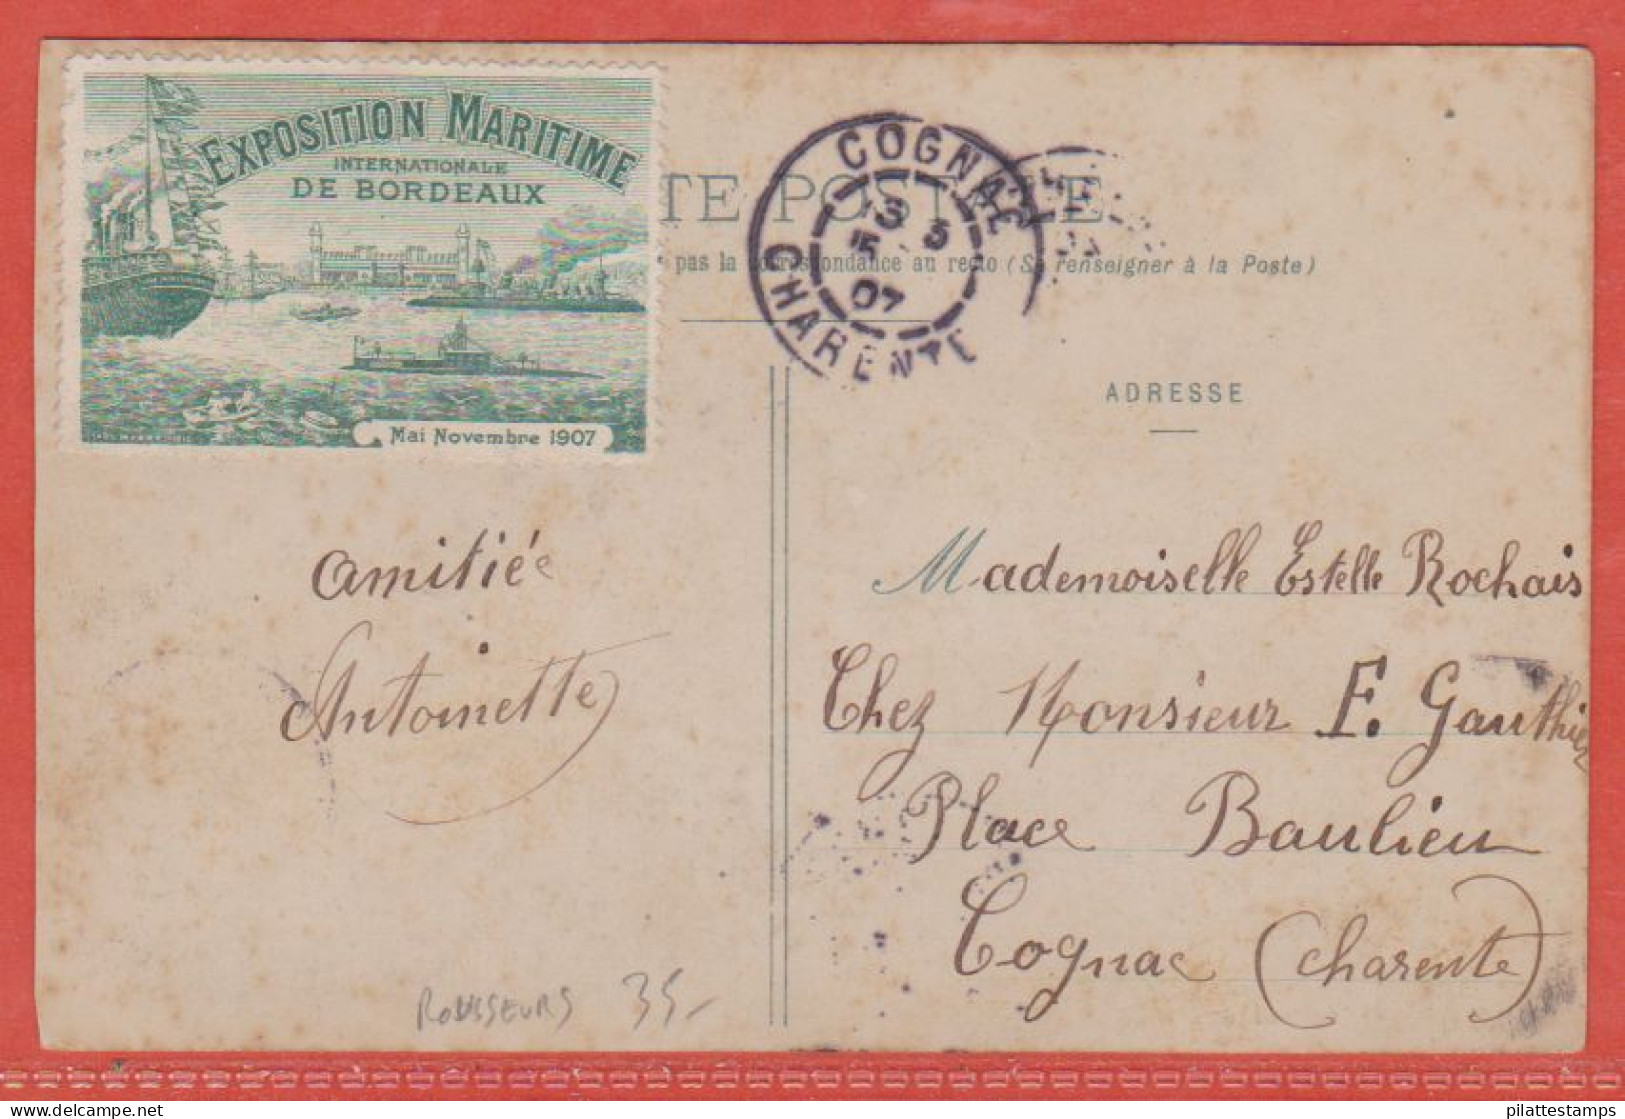 FRANCE VIGNETTE EXPO MARITIME SUR CARTE POSTALE DE 1907 DE BORDEAUX (ROUSSEURS) - Philatelic Fairs